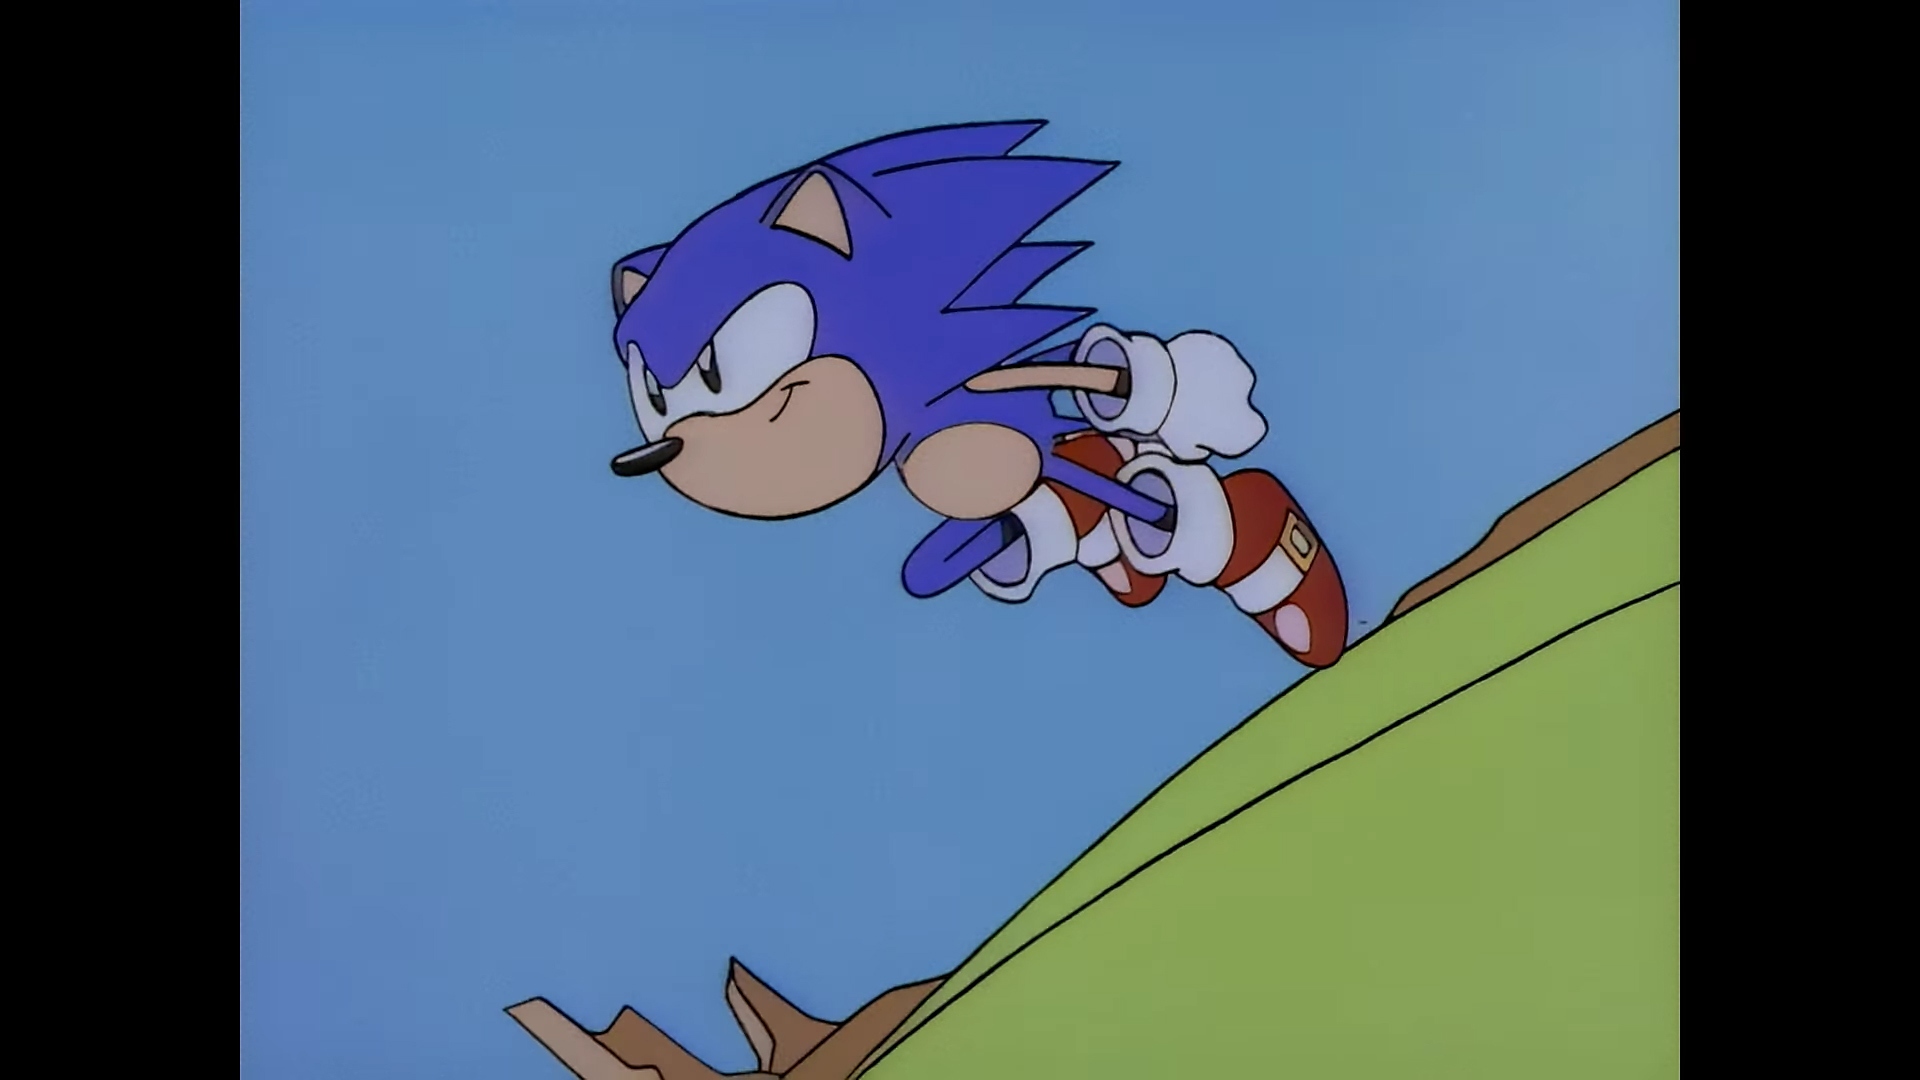 Snimka zaslona iz igre Sonic Origins koja prikazuje animiranu sliku Sonica